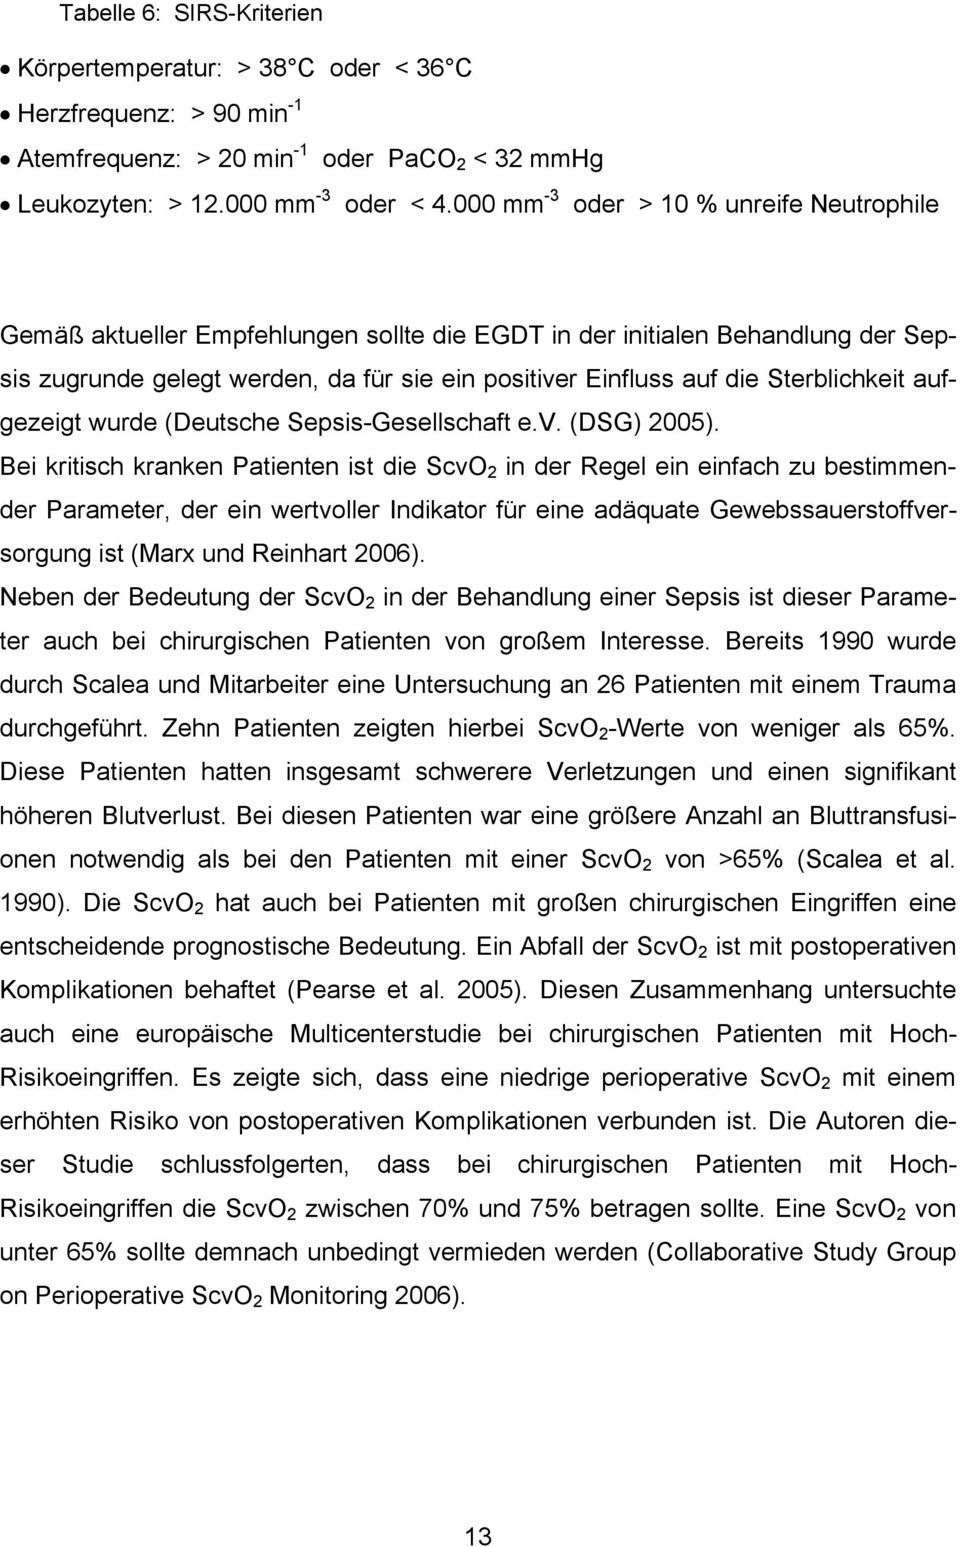 Sterblichkeit aufgezeigt wurde (Deutsche Sepsis-Gesellschaft e.v. (DSG) 2005).